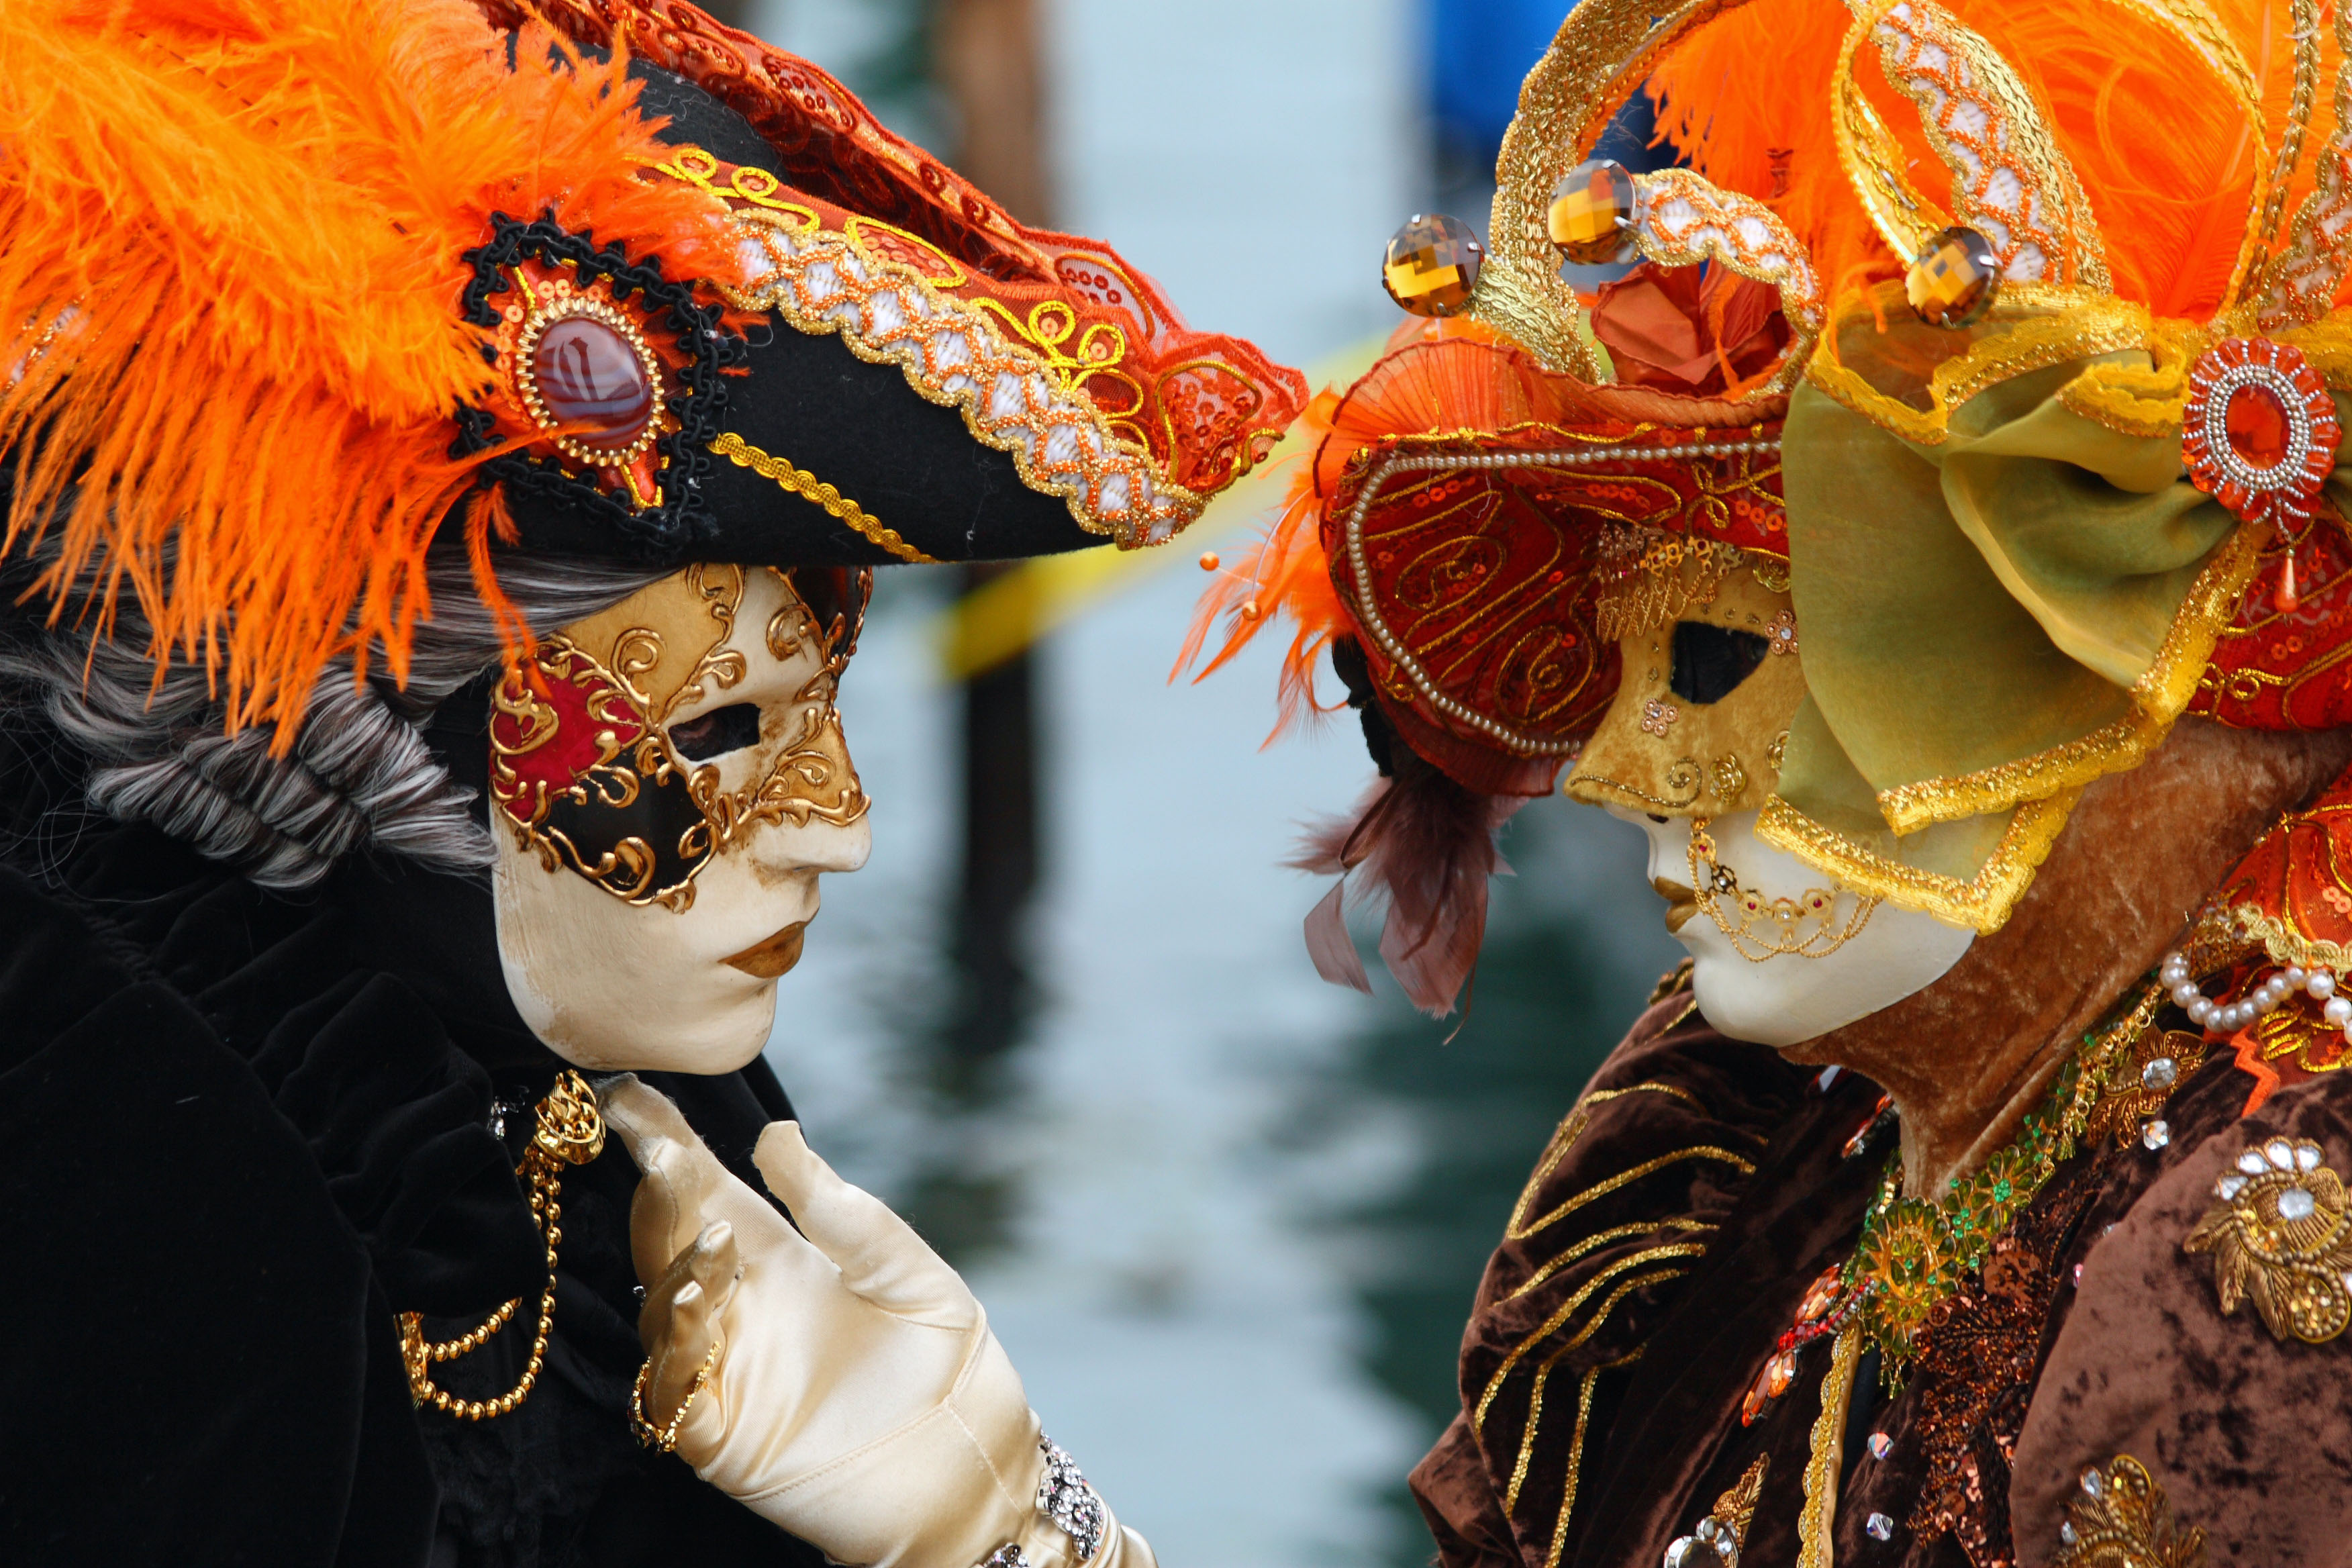 A leghíresebb farsangi mulatság Velencében van.